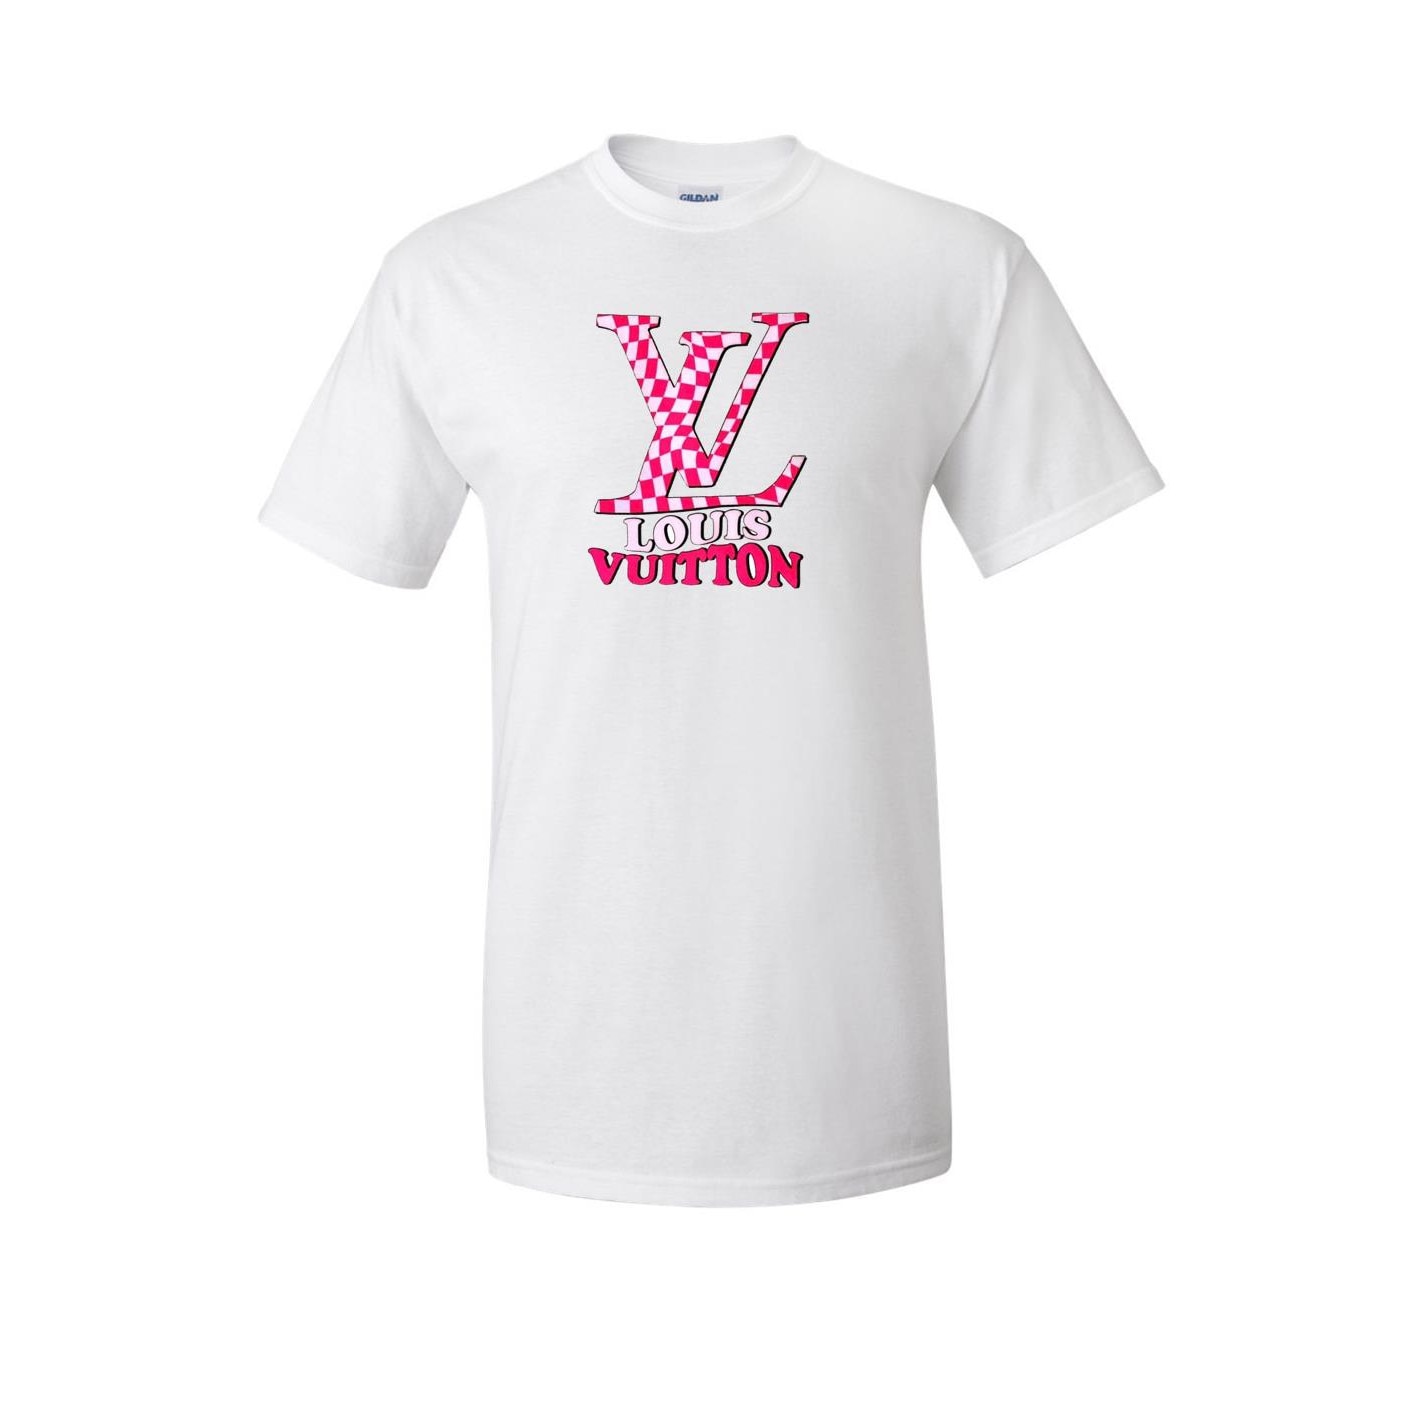 Póló, személyre szabott Louis Vuitton logóval, fehér, L-es méret